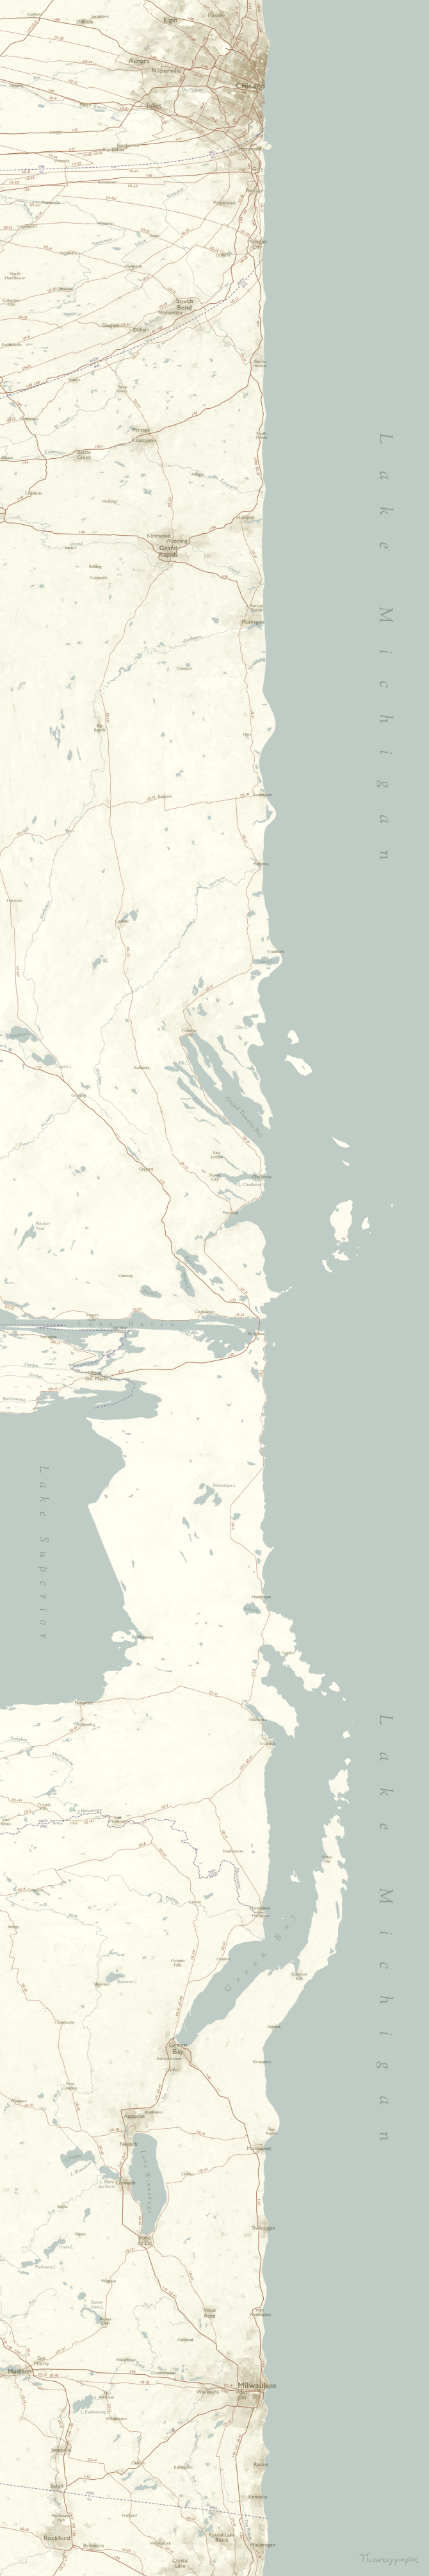 A linear map of Lake Michigan